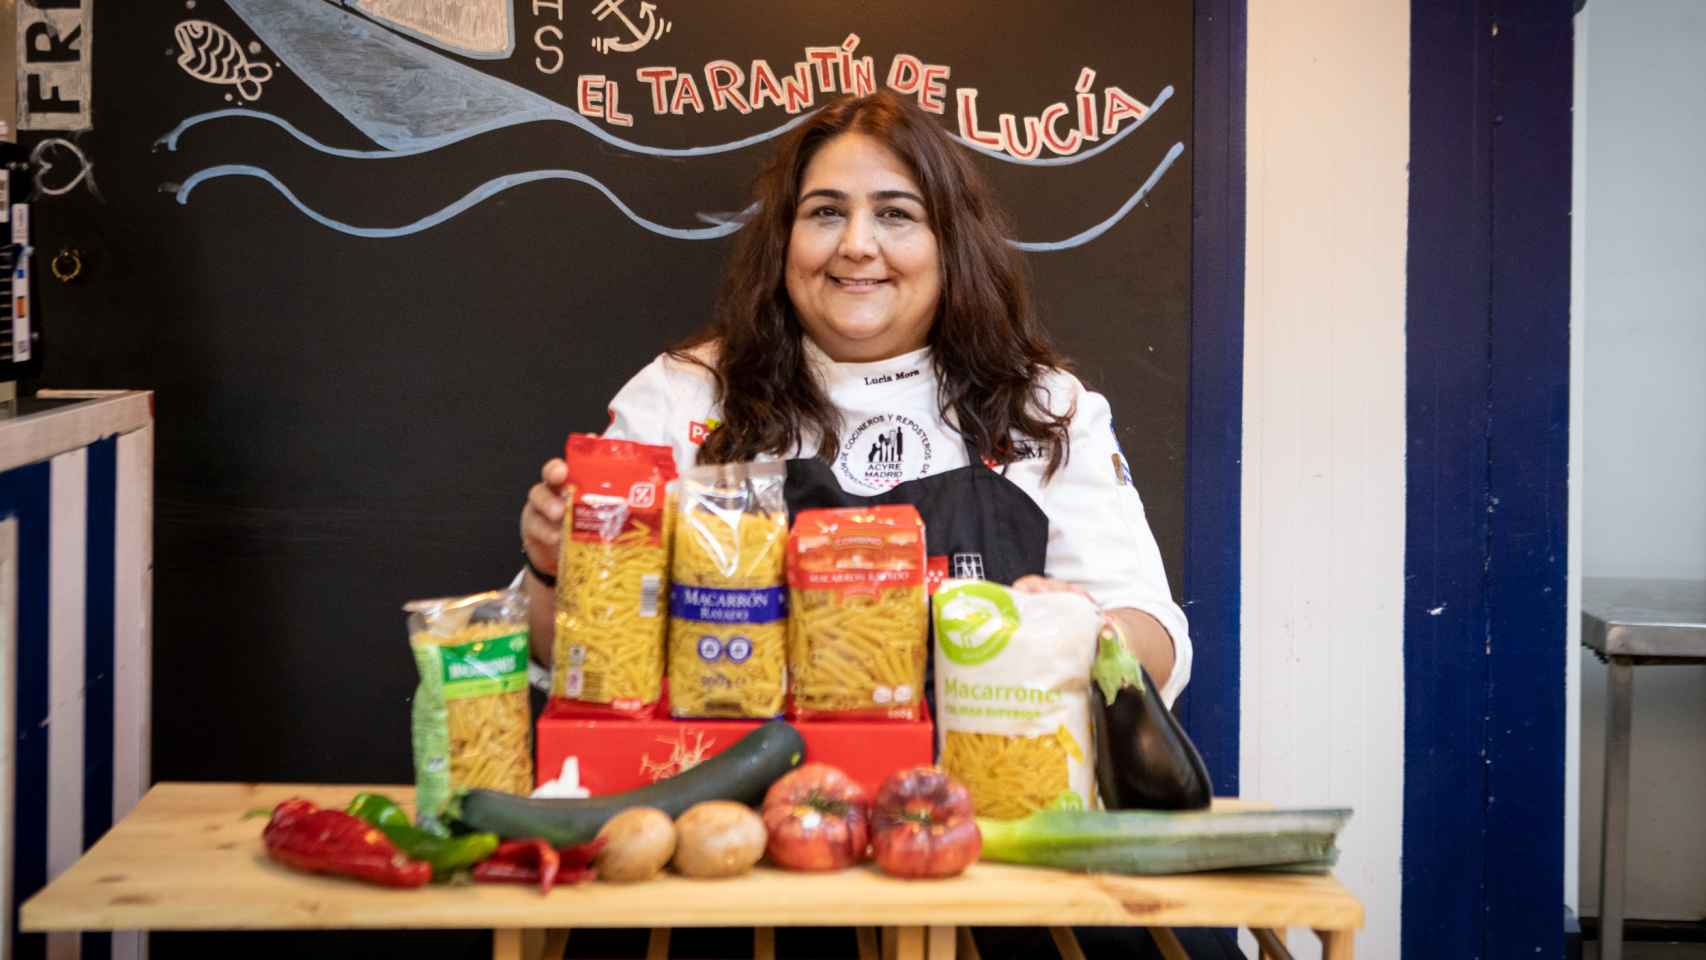 Los cinco paquetes de macarrones probados por Lucía Mora, cocinera profesional de El Tarantín de Lucía.